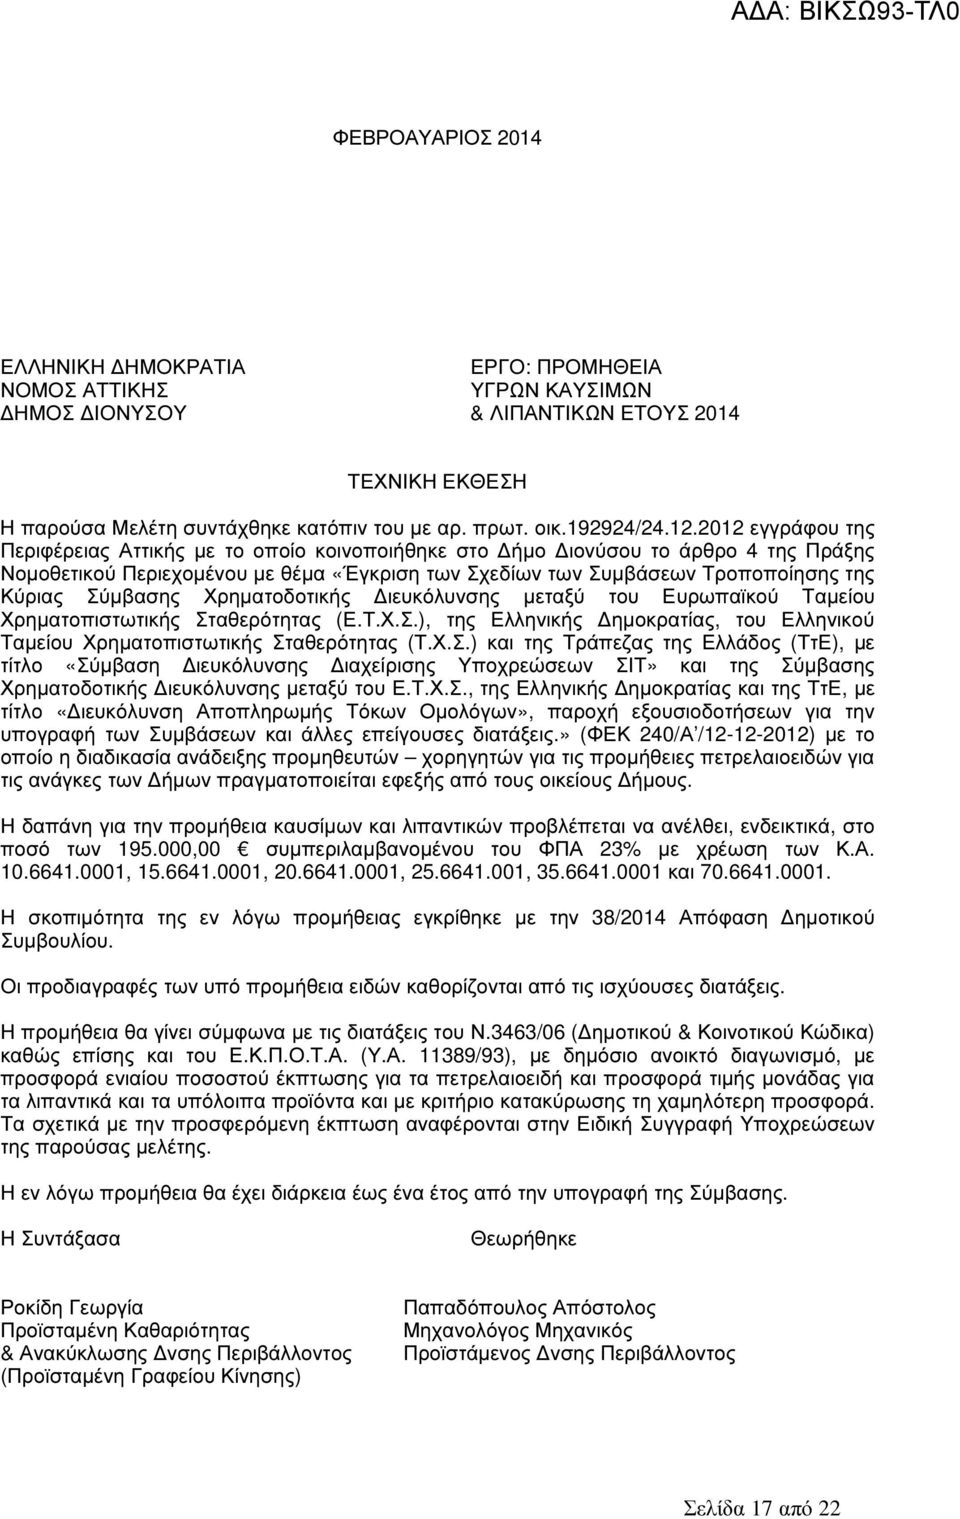 2012 εγγράφου της Περιφέρειας Αττικής µε το οποίο κοινοποιήθηκε στο ήµο ιονύσου το άρθρο 4 της Πράξης Νοµοθετικού Περιεχοµένου µε θέµα «Έγκριση των Σχεδίων των Συµβάσεων Τροποποίησης της Κύριας